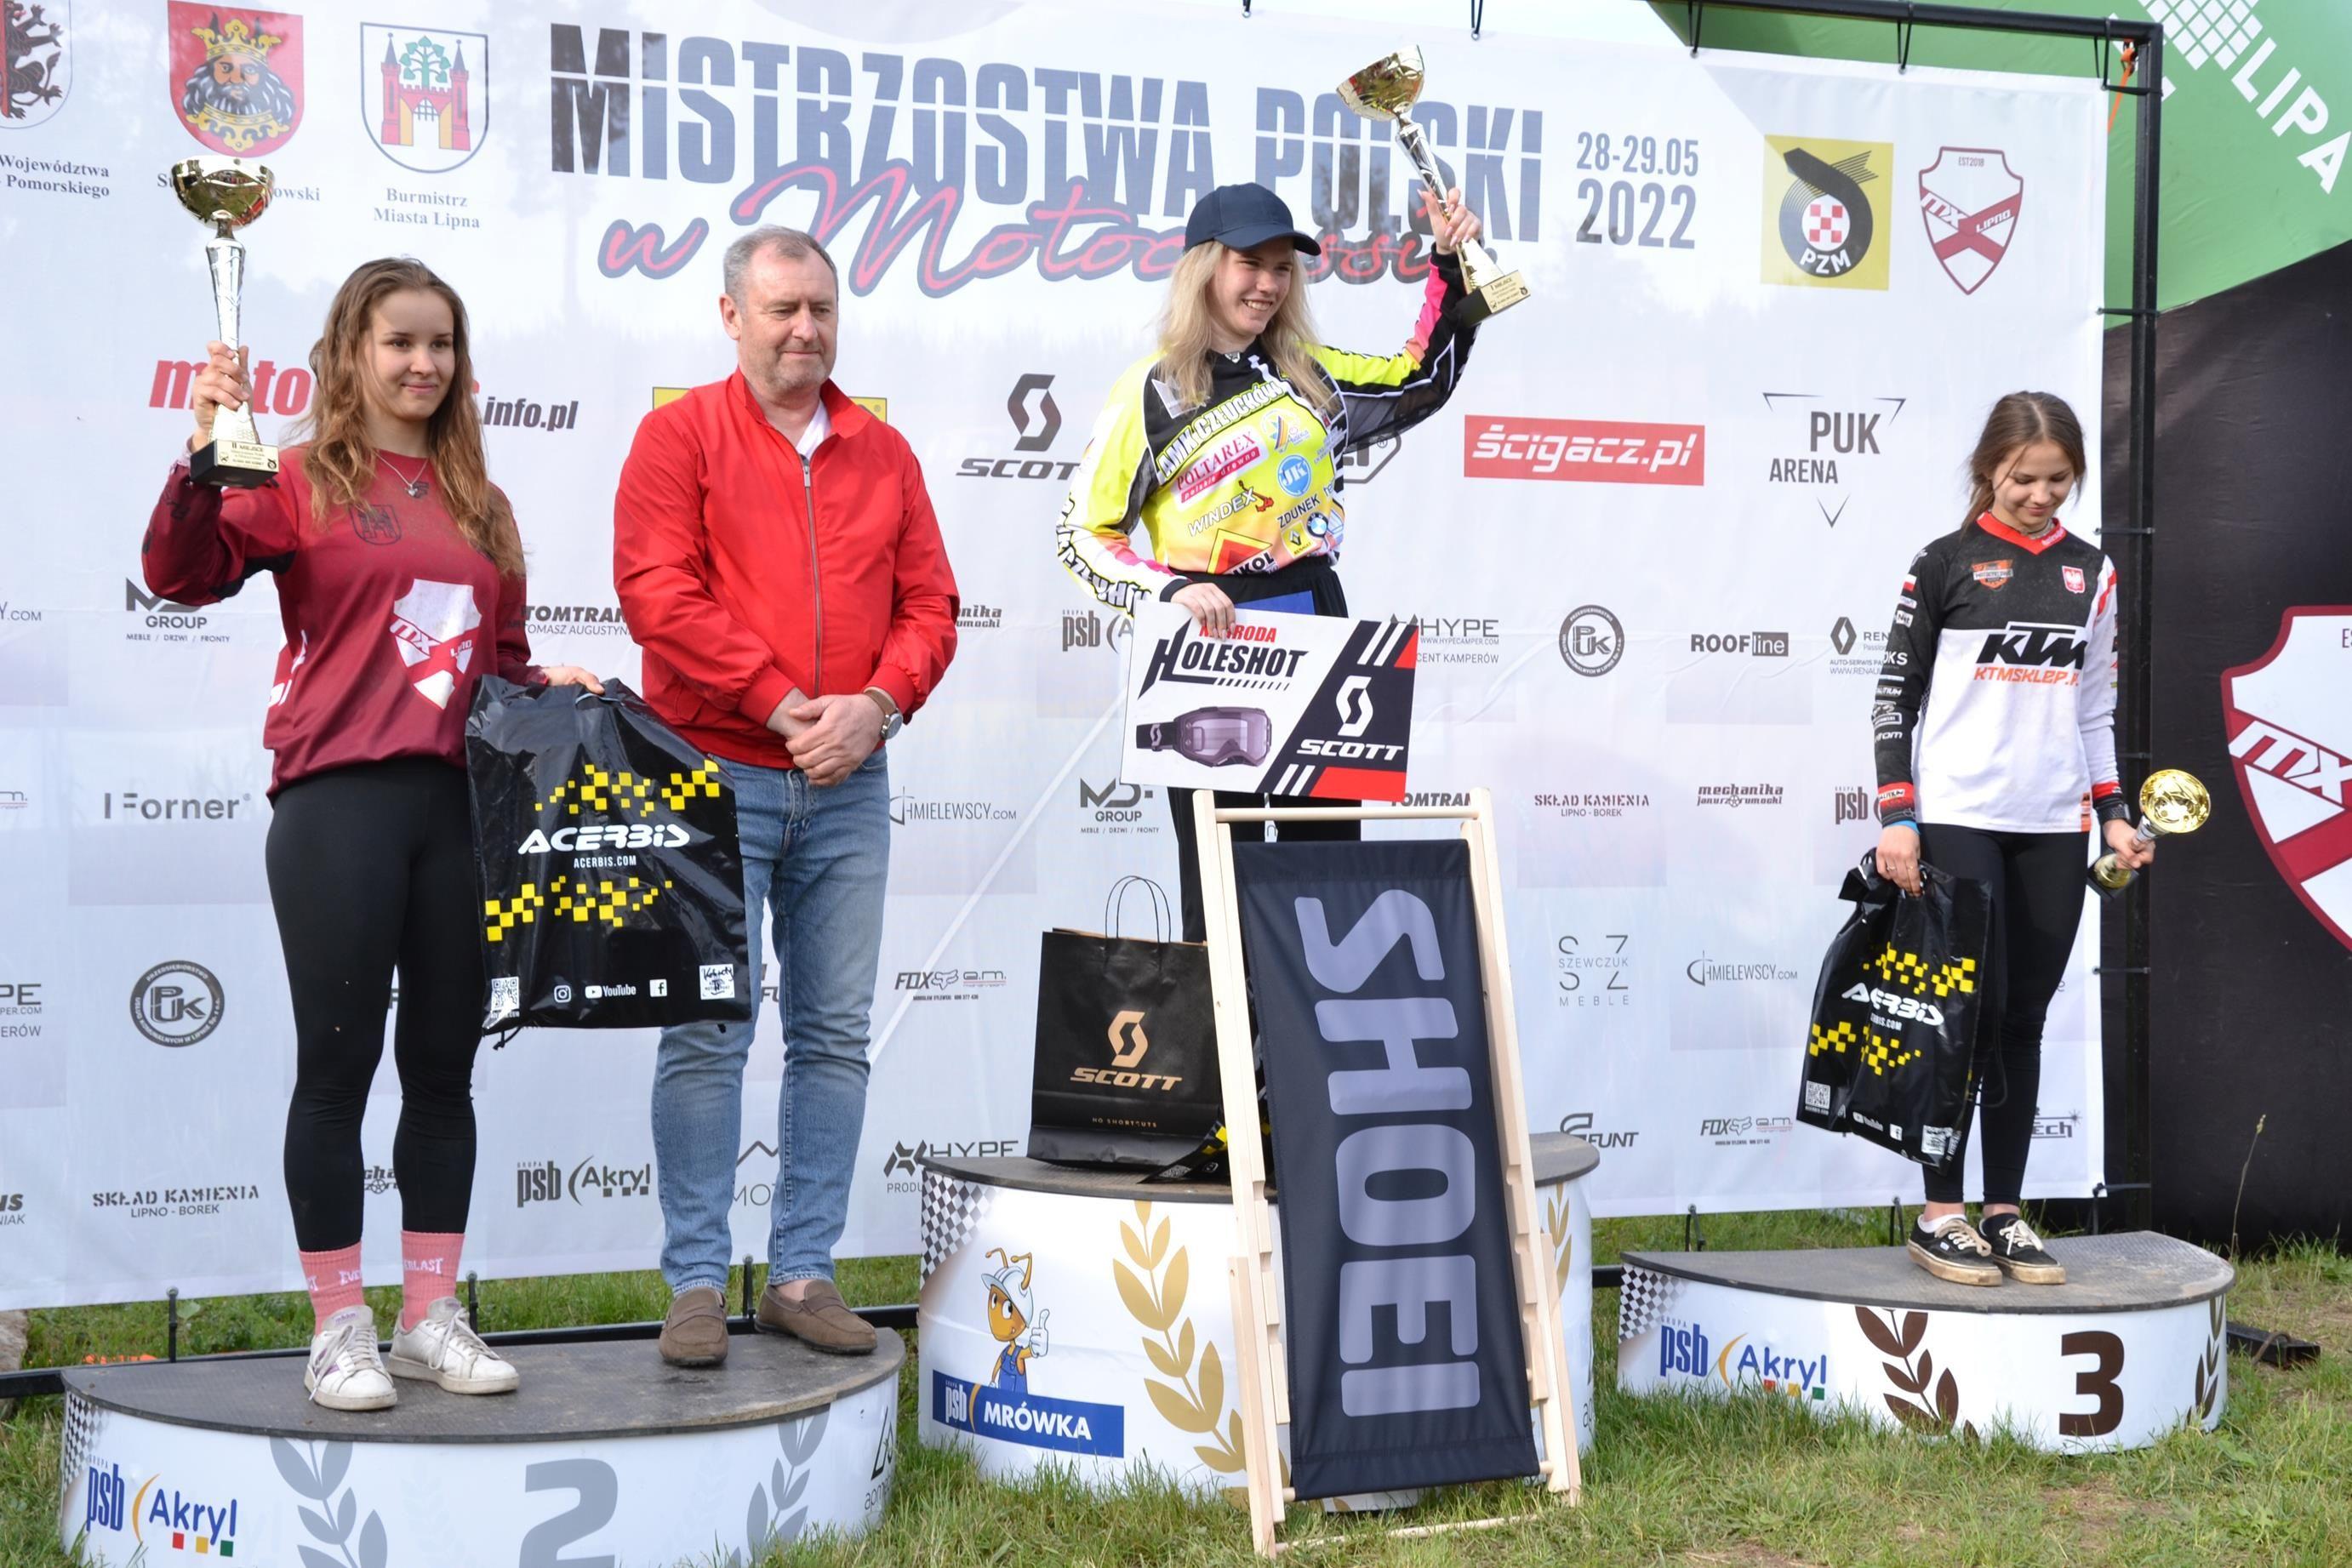 Zdj. nr. 12. Mistrzostwa Polski w Motocrossie - 28 i 29 maja 2022 r.